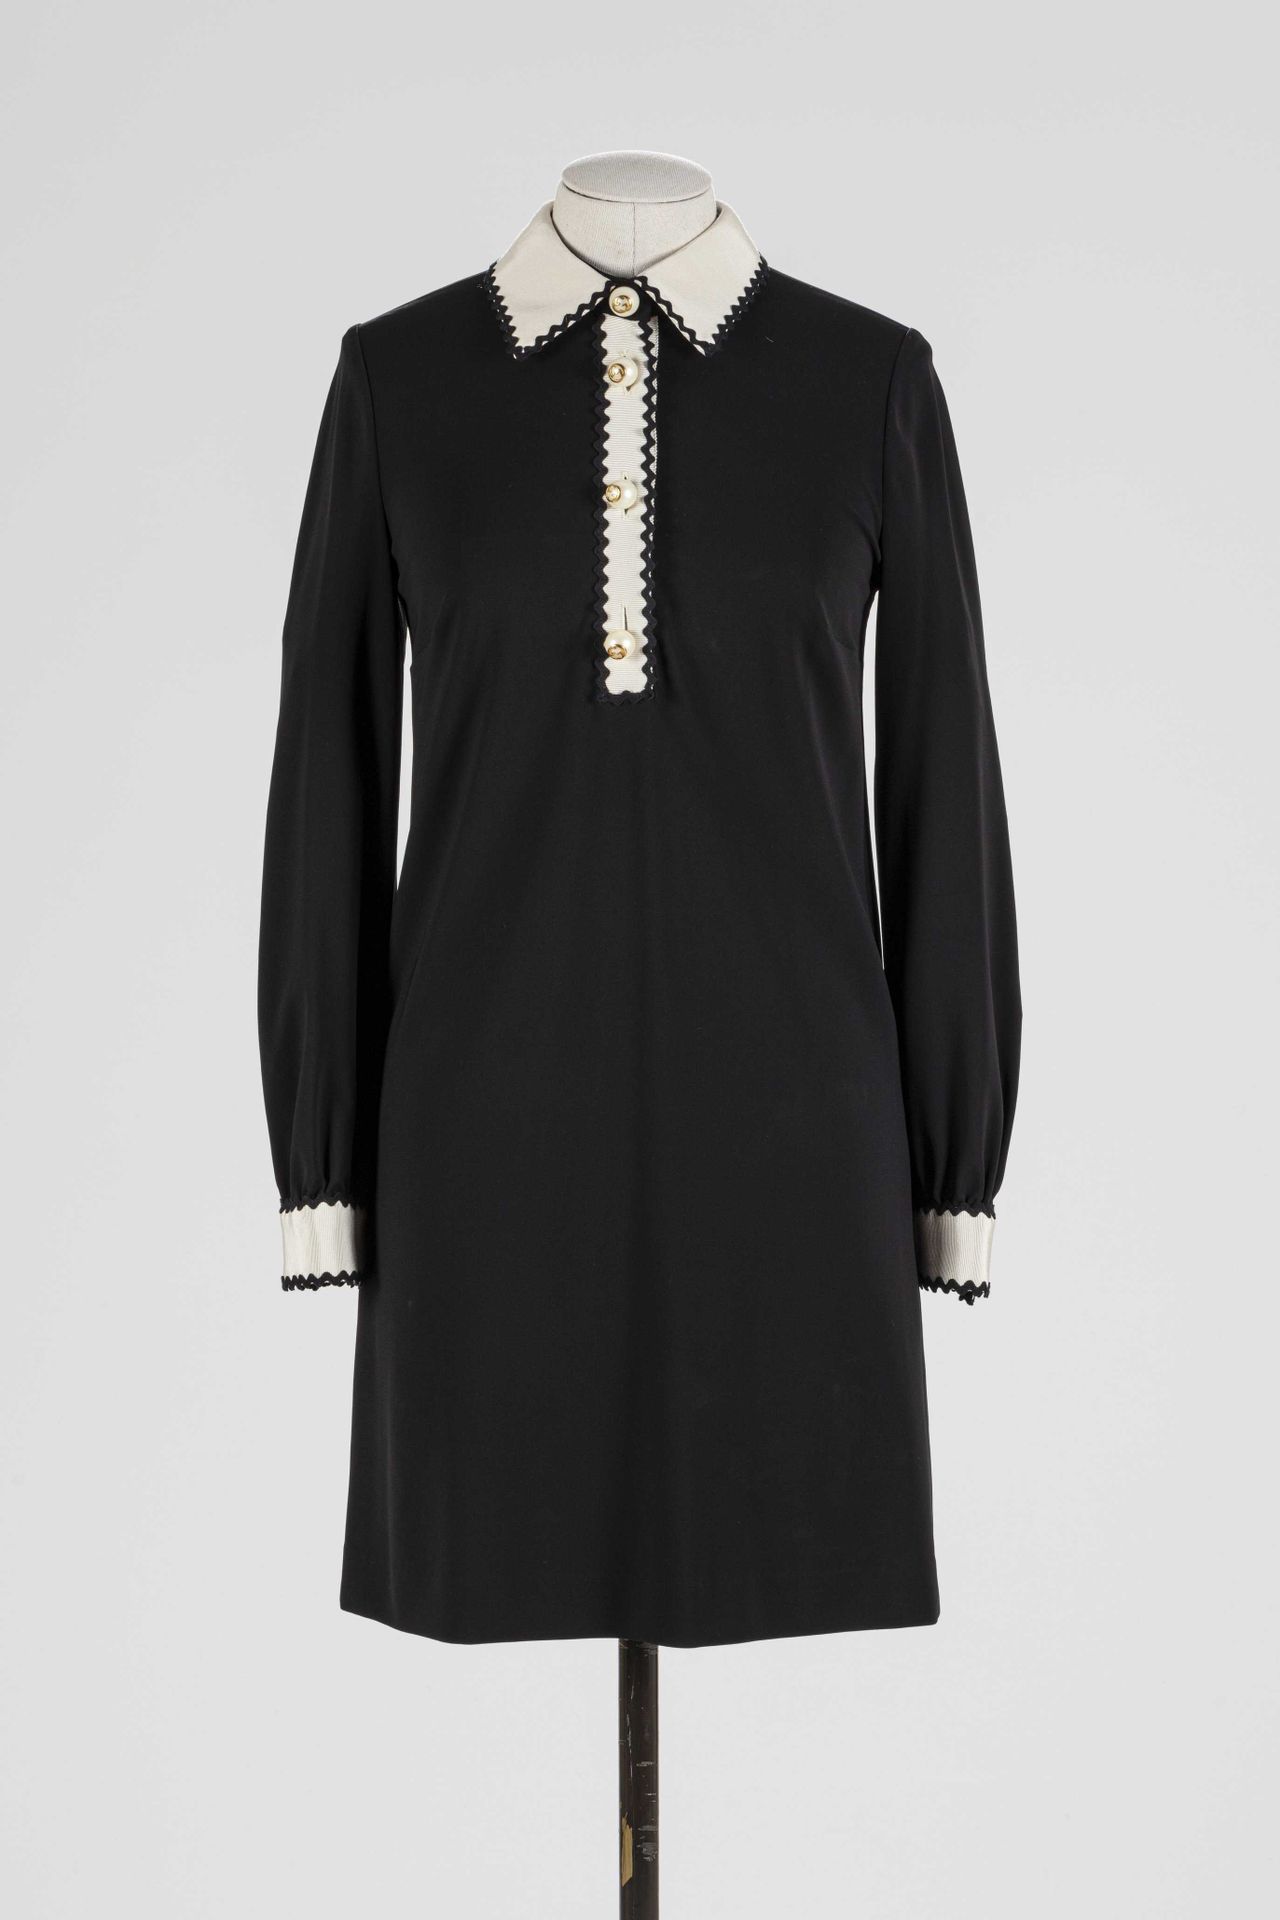 Null GUCCI：黑色粘胶衣裙，白色领口和袖口饰有黑色羊角花，单扣模仿带有品牌标志的假珍珠，背后有拉链扣。

T.36